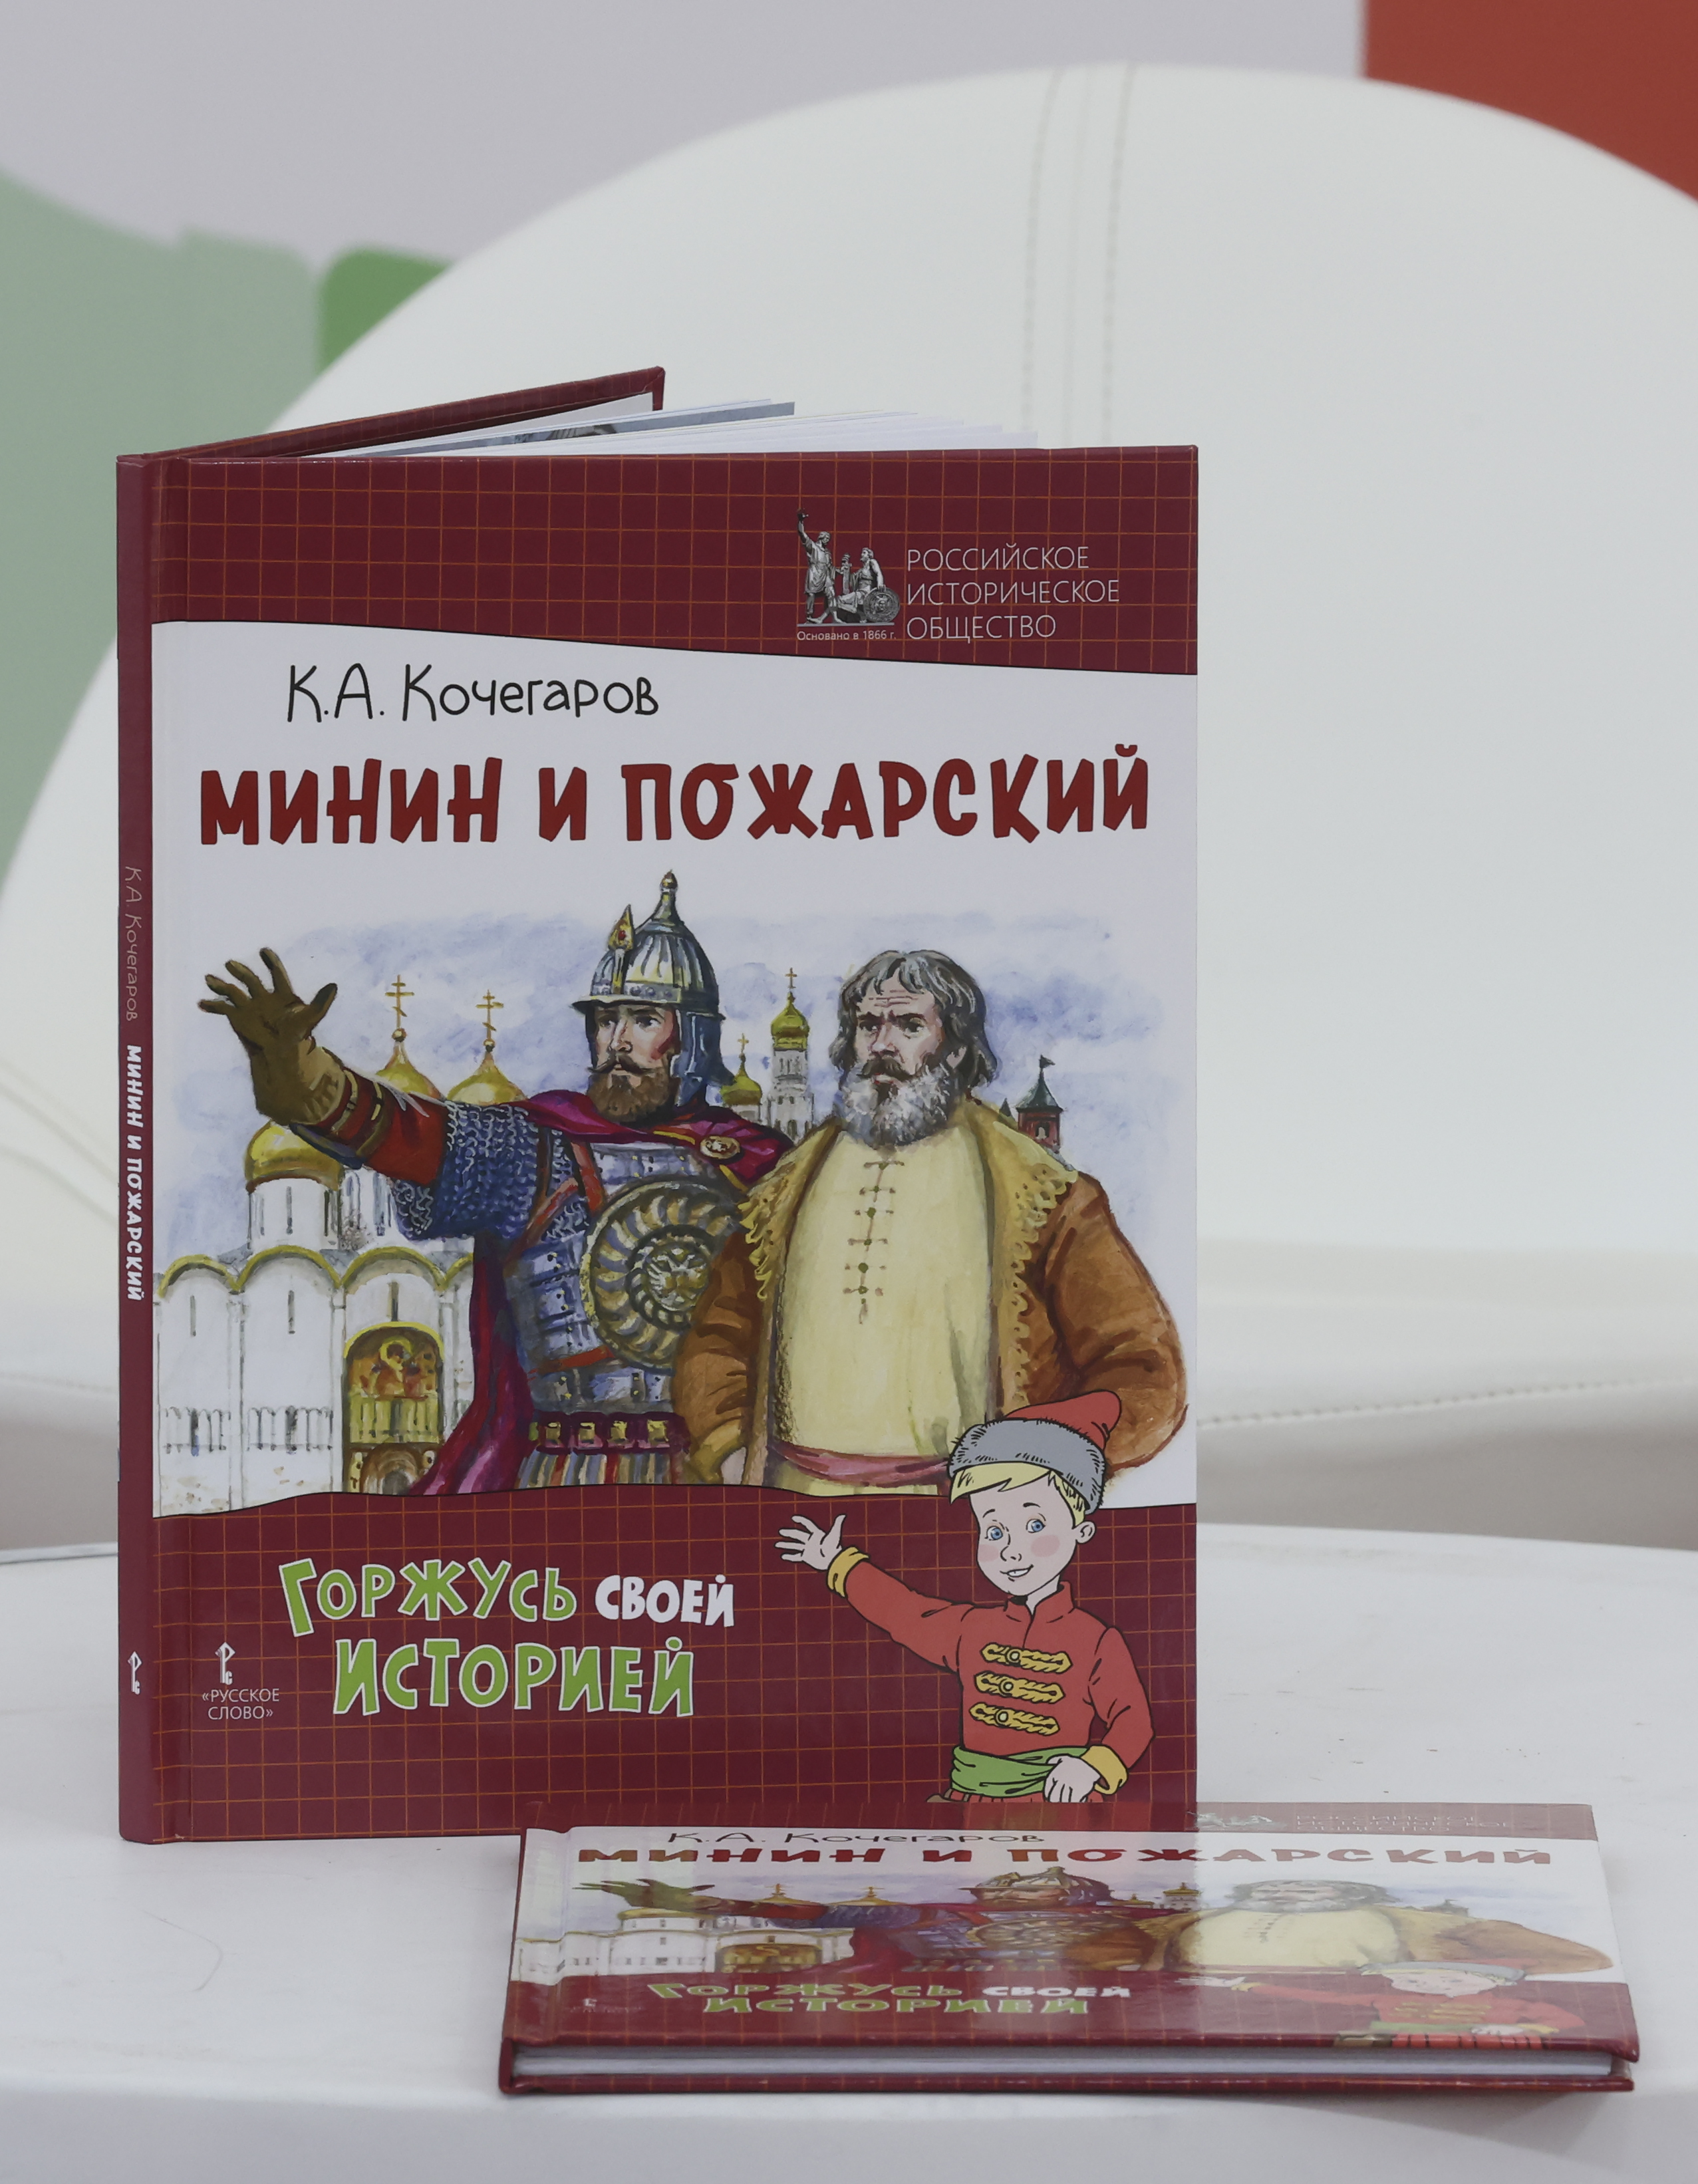 В павильоне «История Отечества» состоялась презентация книг издательства «Русское слово»